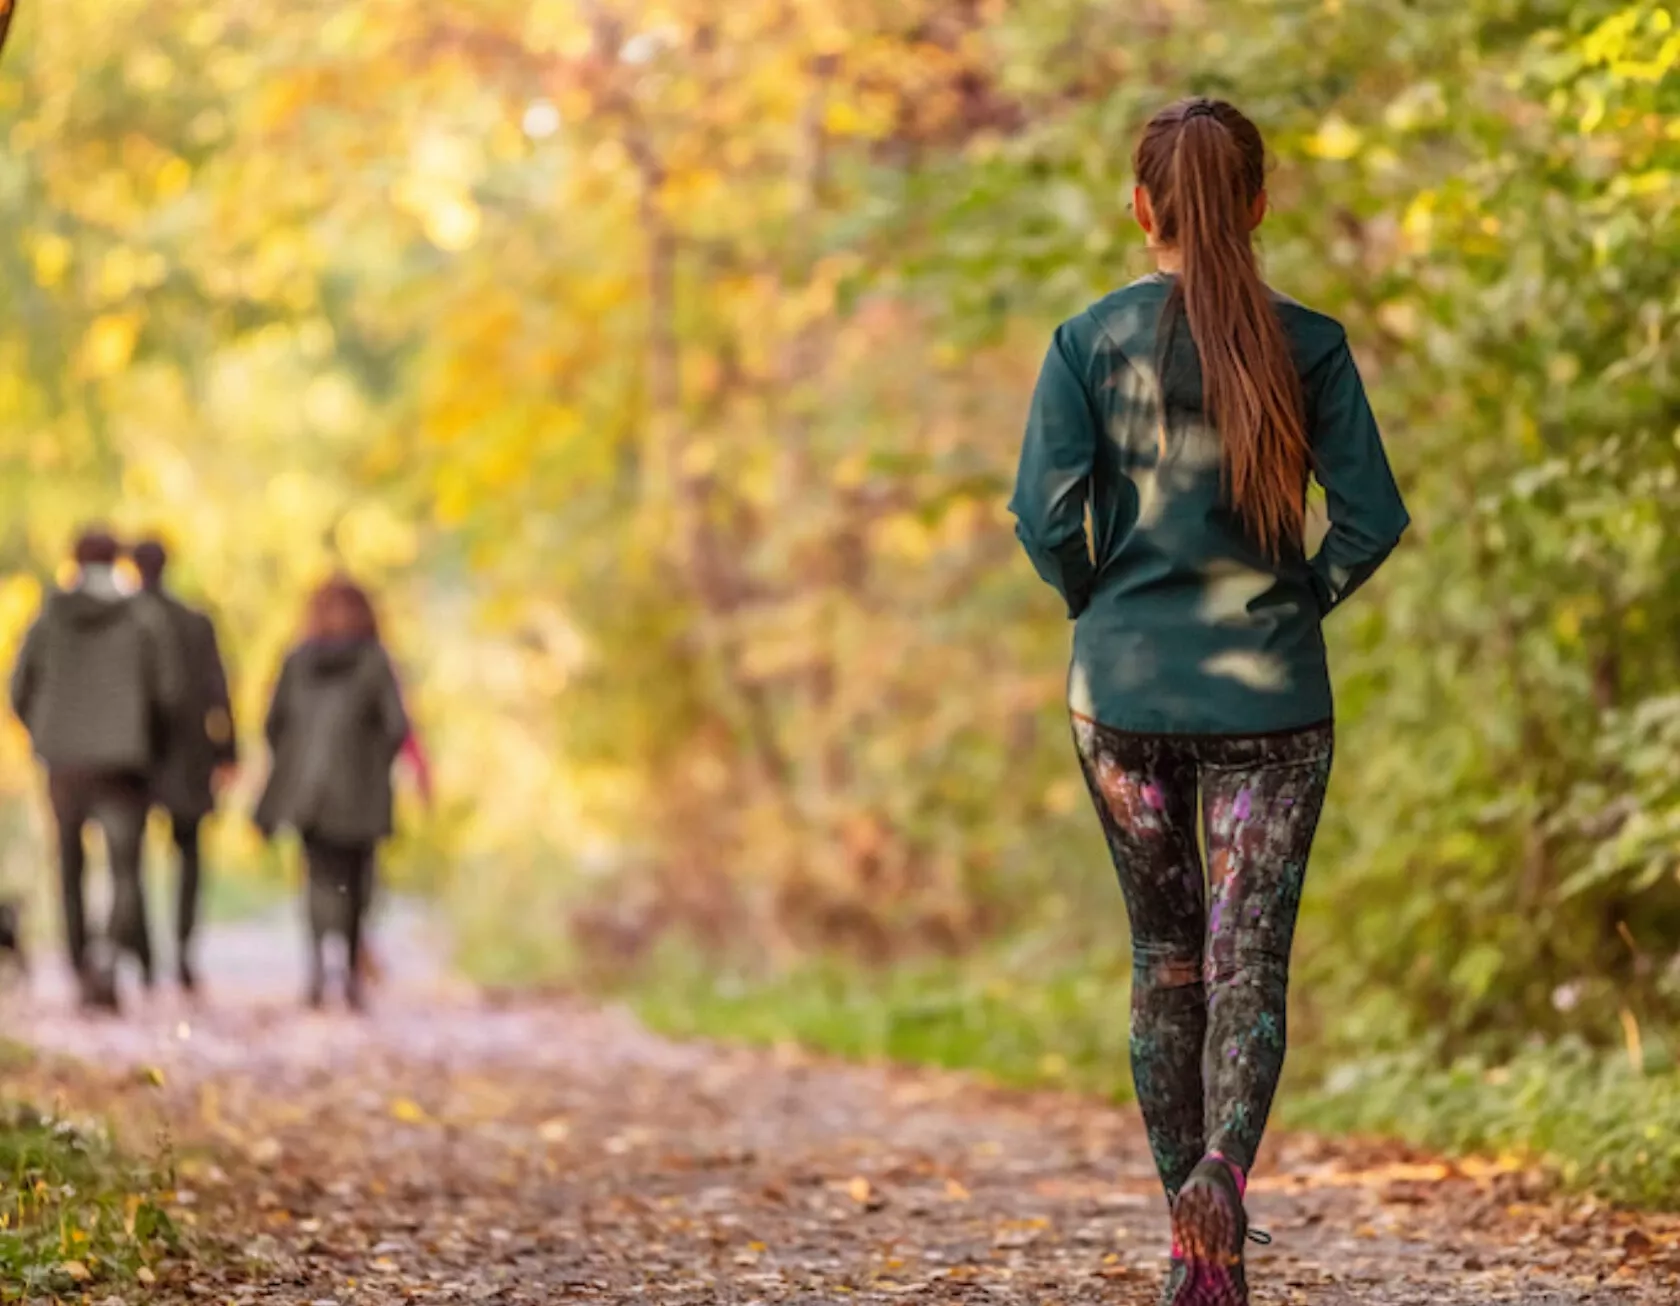 Spaziergänger laufen auf einem Weg in einem sonnendurchfluteten Herbstwald mit gelben und grünen Blättern